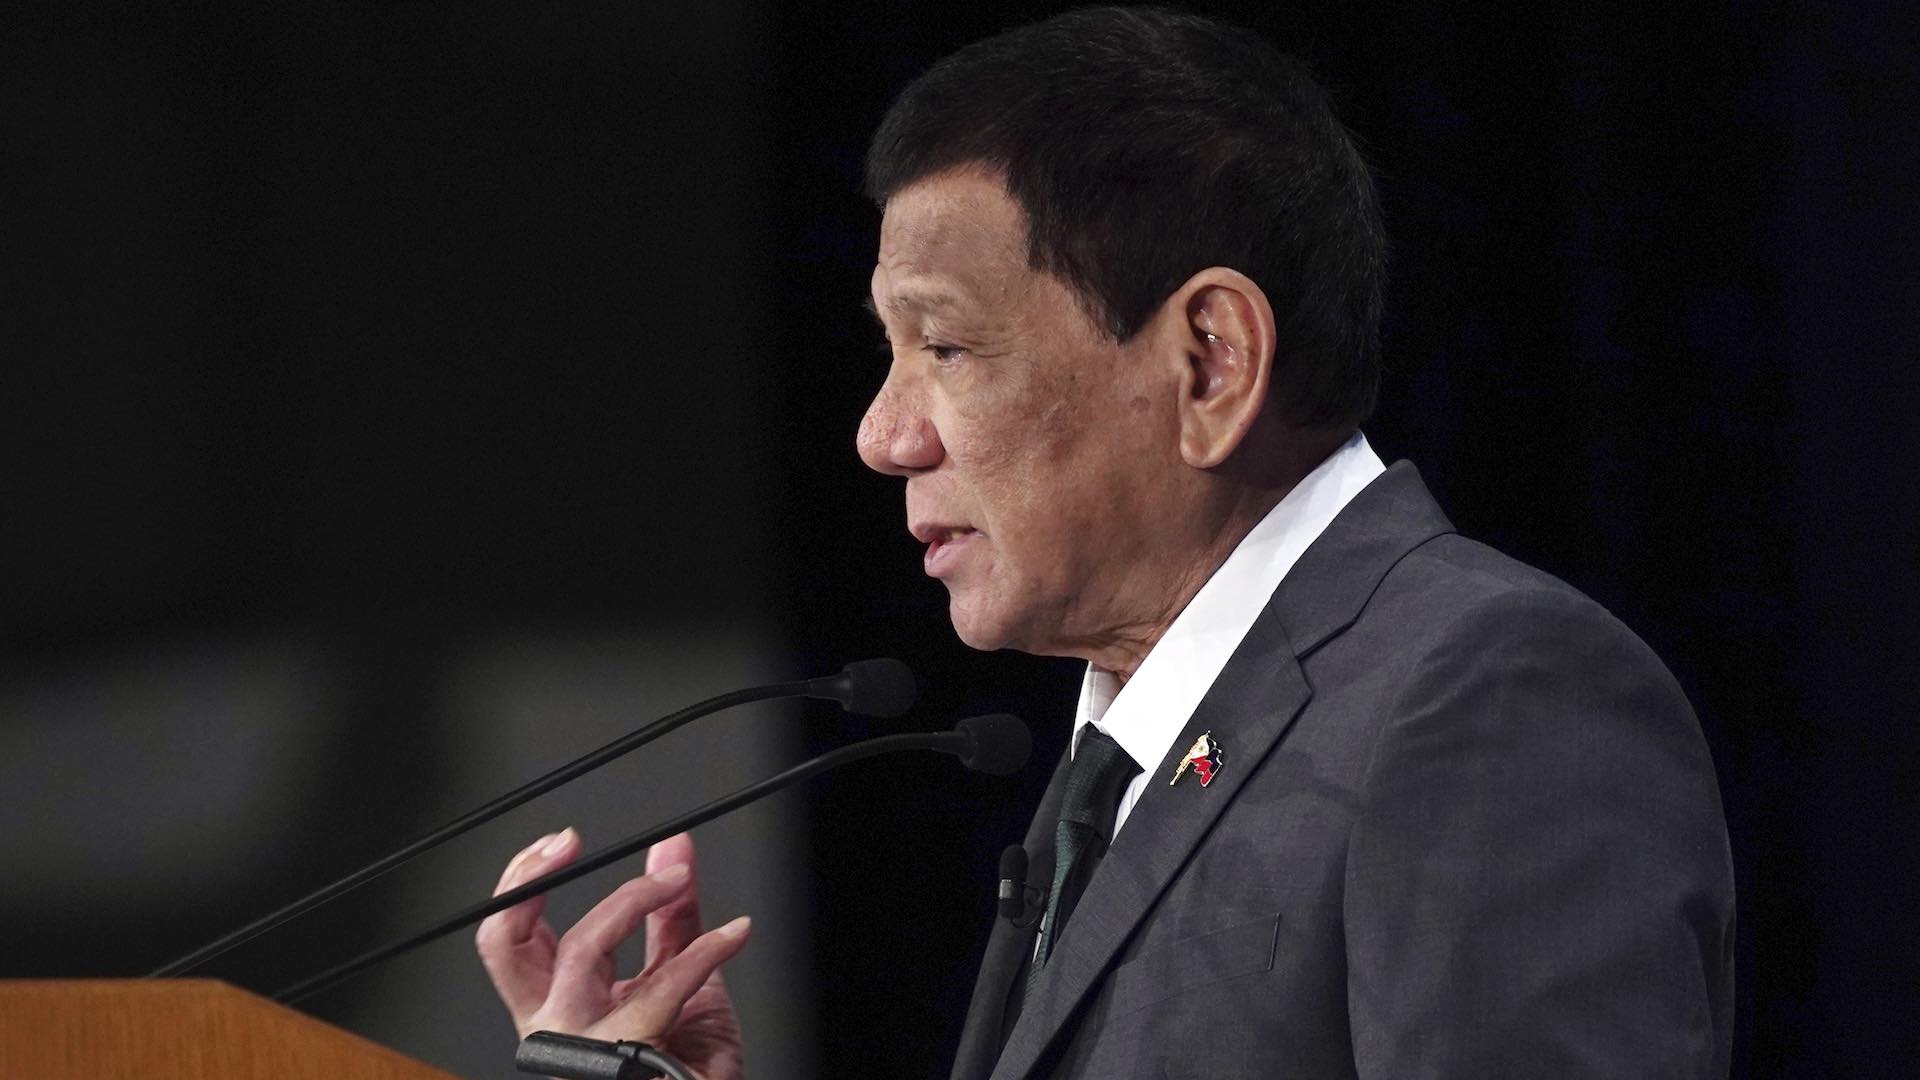 Indignación en Filipinas después de que Duterte asegure que se ha "curado" de ser gay